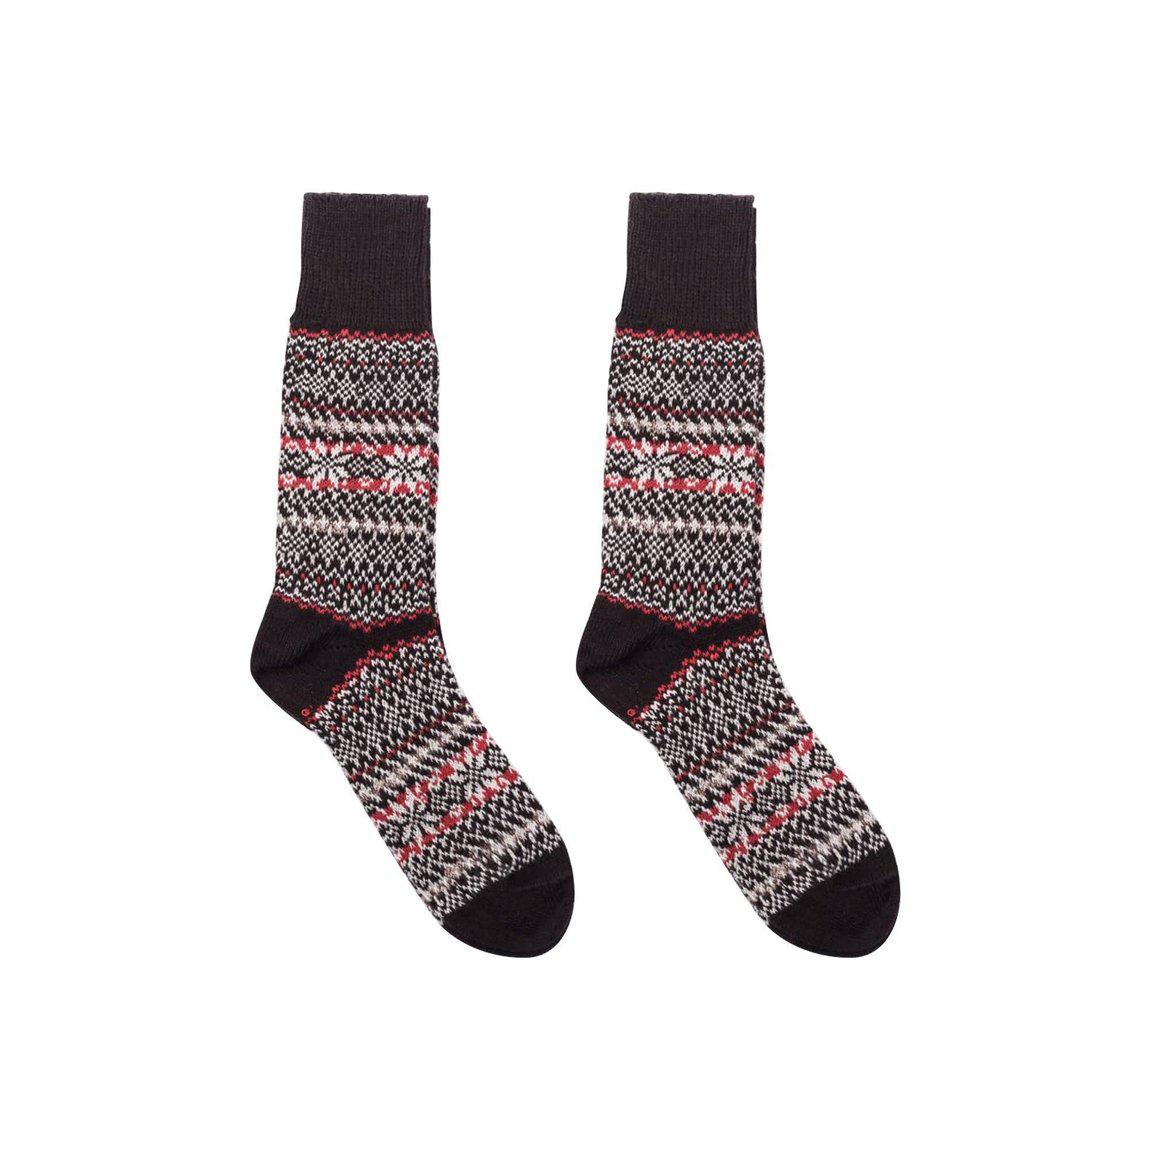 Nordic Socks Merino Wool in PERFORM™ (Sigrid - Black) - Unisex